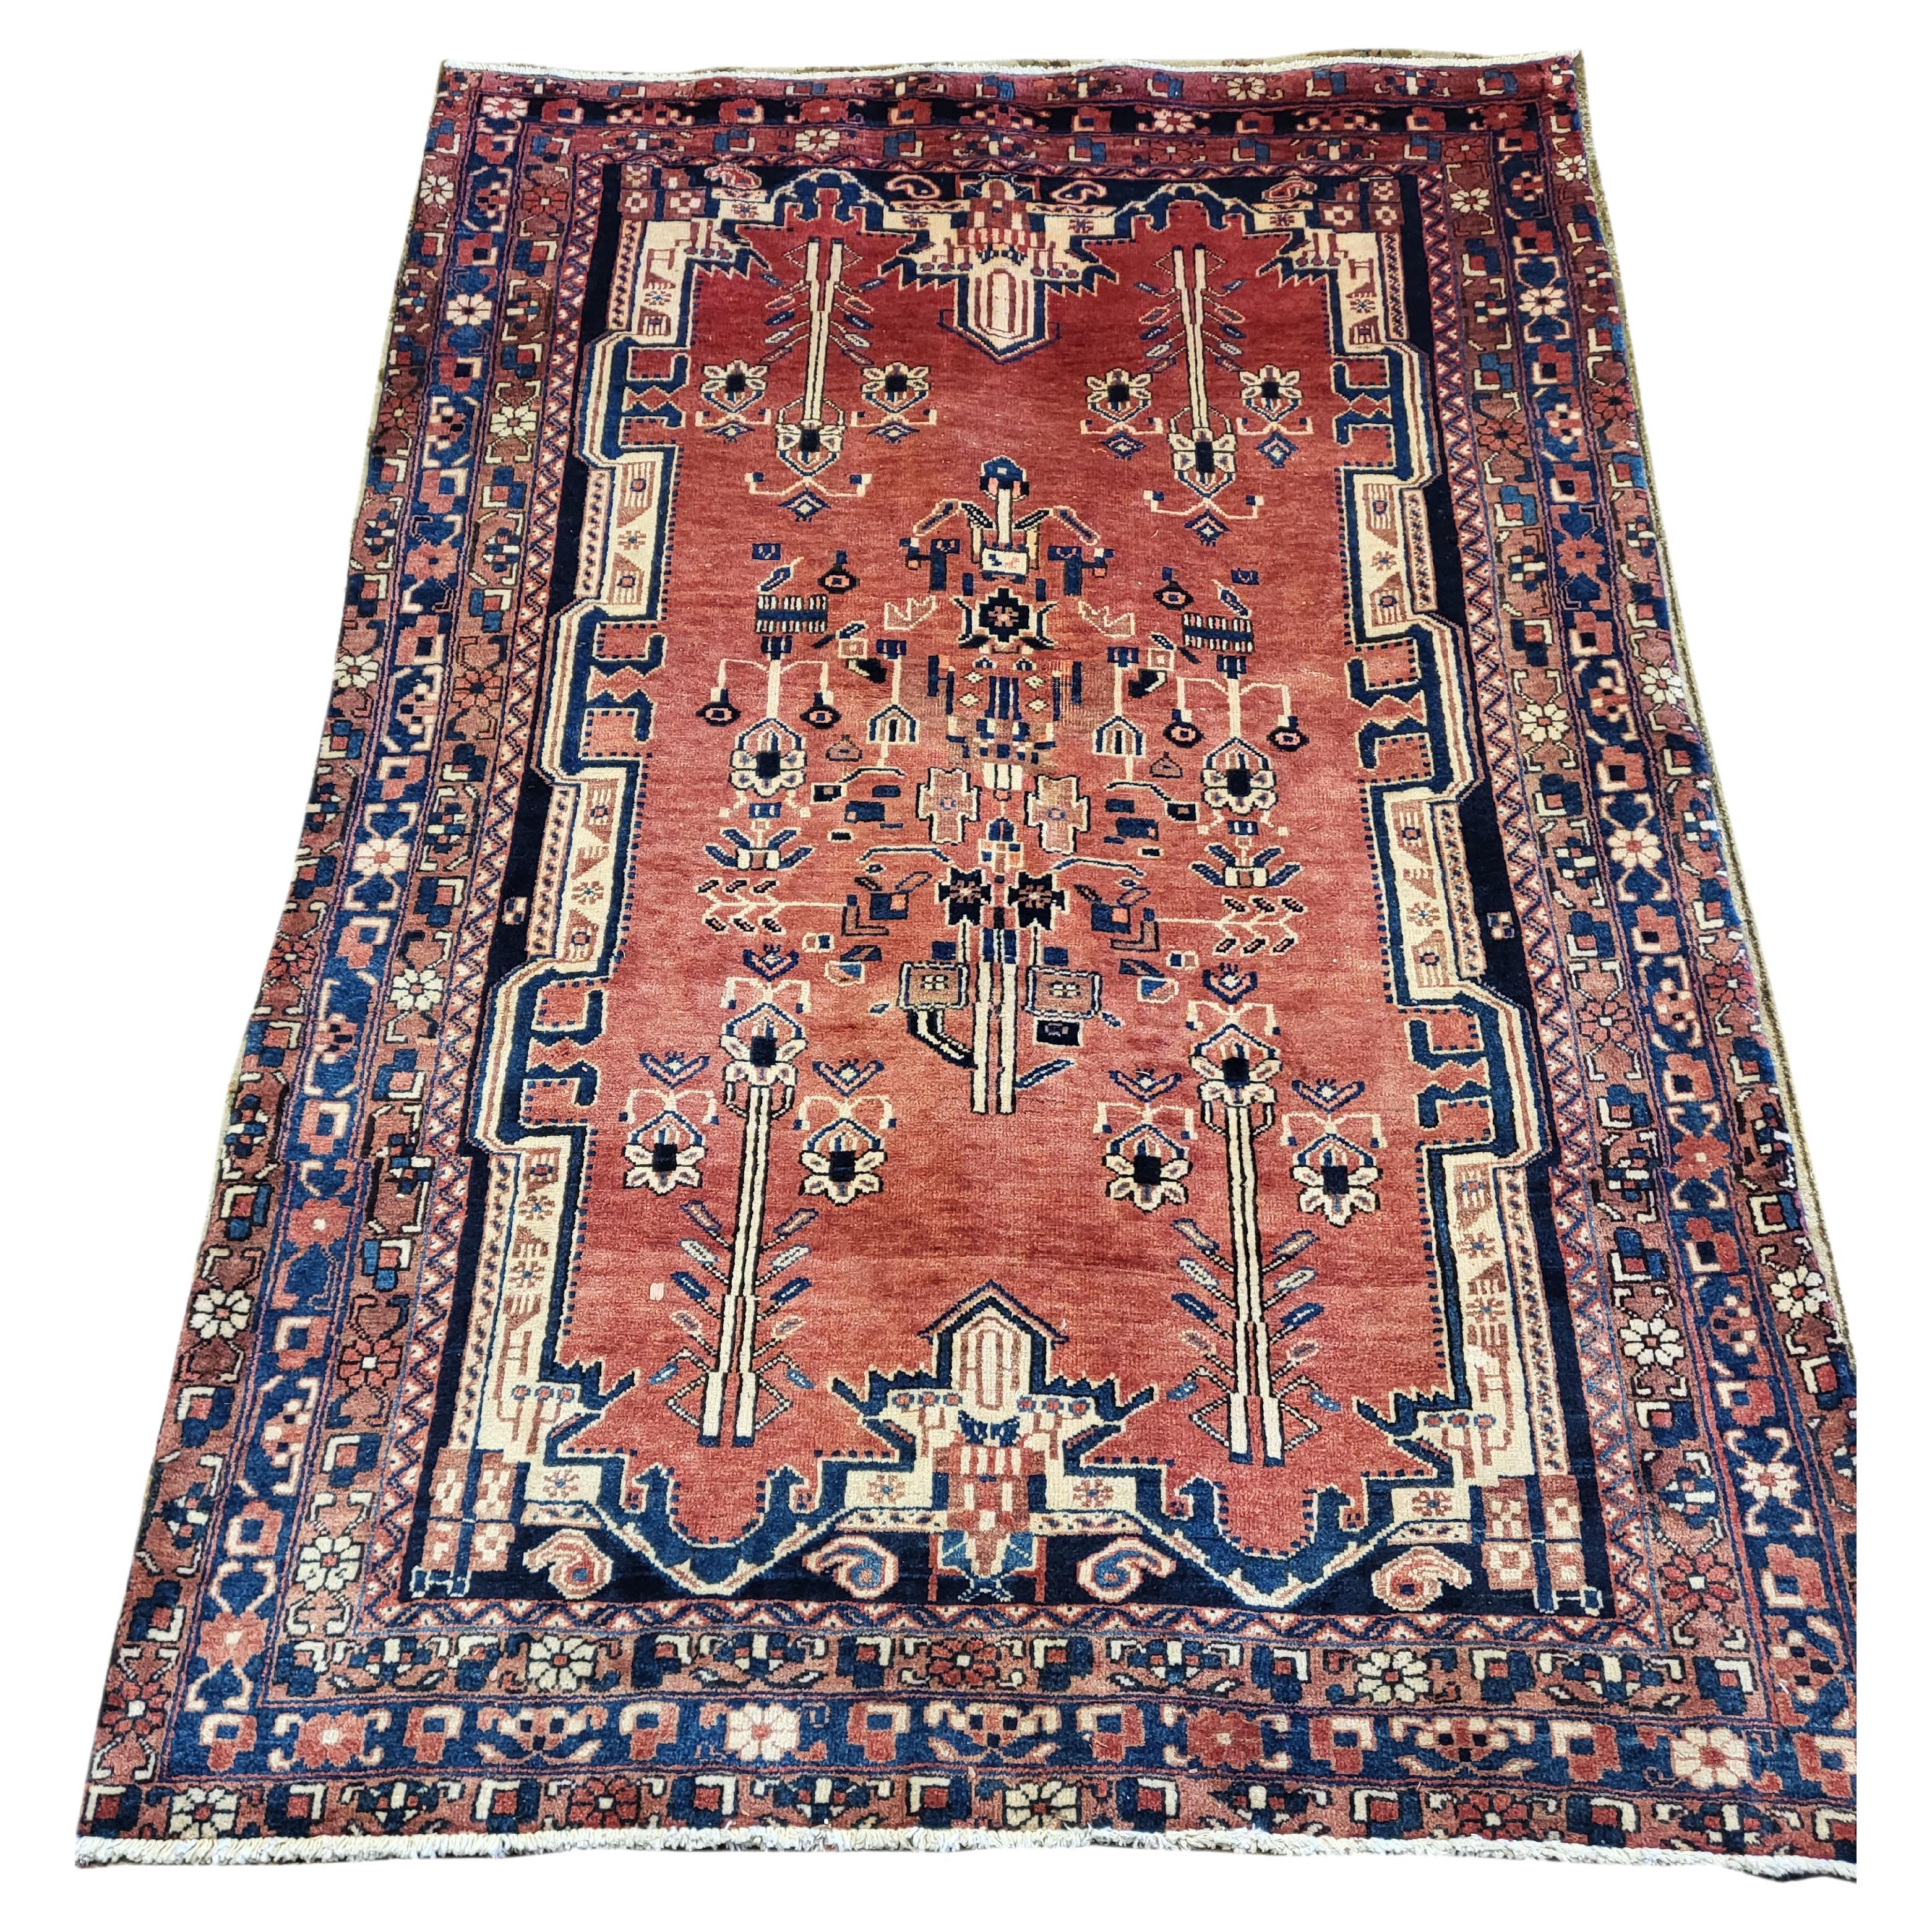 5'x7' Antiker Sirjan / Afshar - Persischer Teppich - Rost